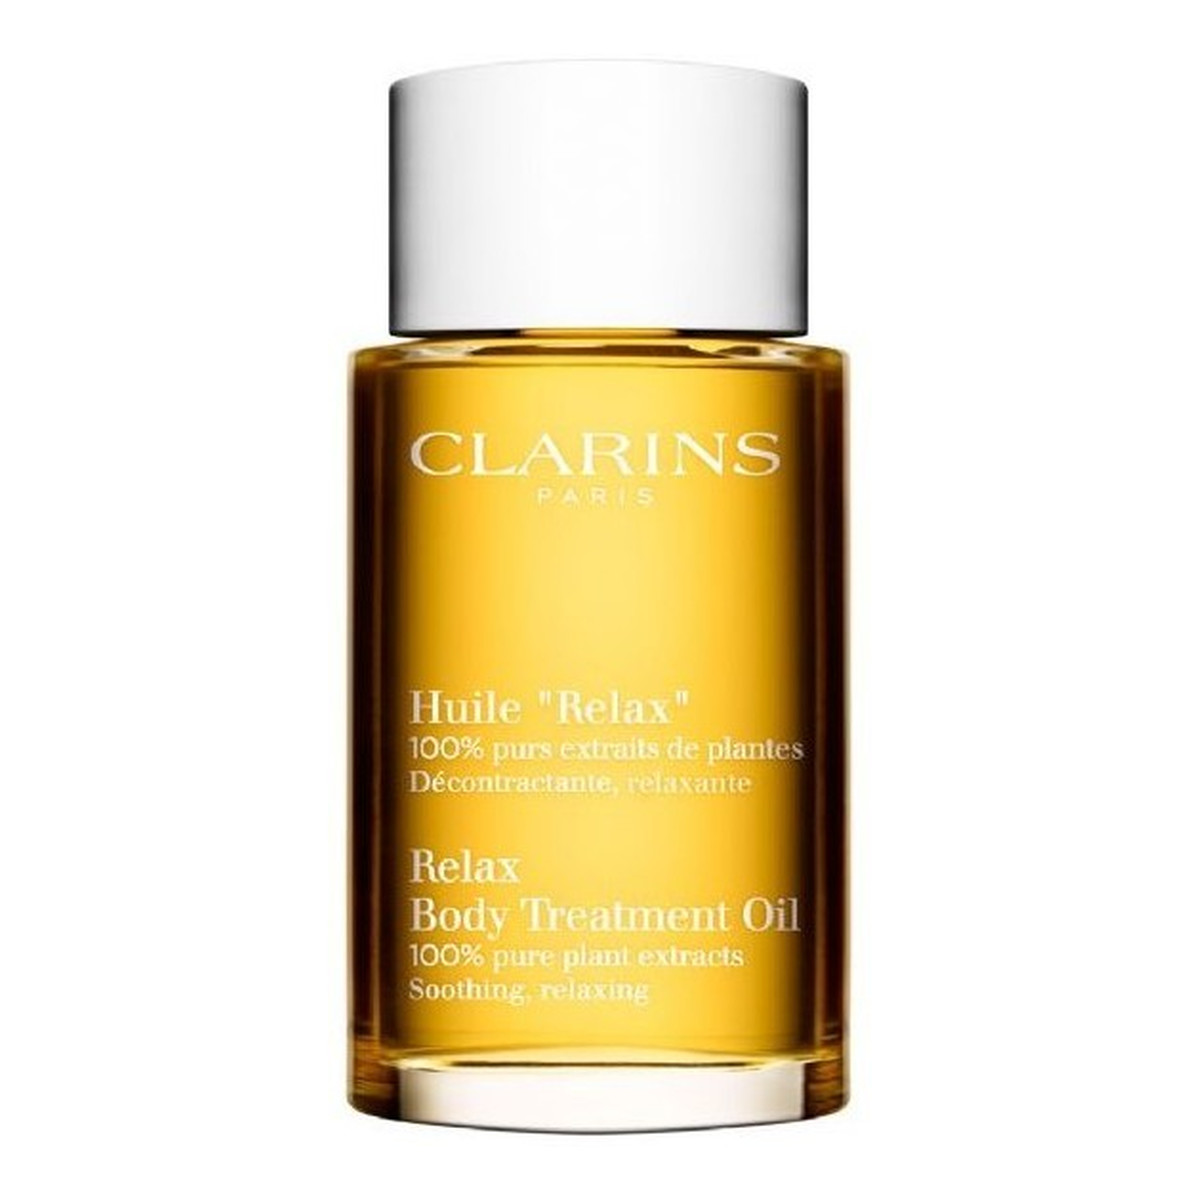 Clarins Huile Relax Body Treatment Oil Relaksujący olejek do ciała 100ml